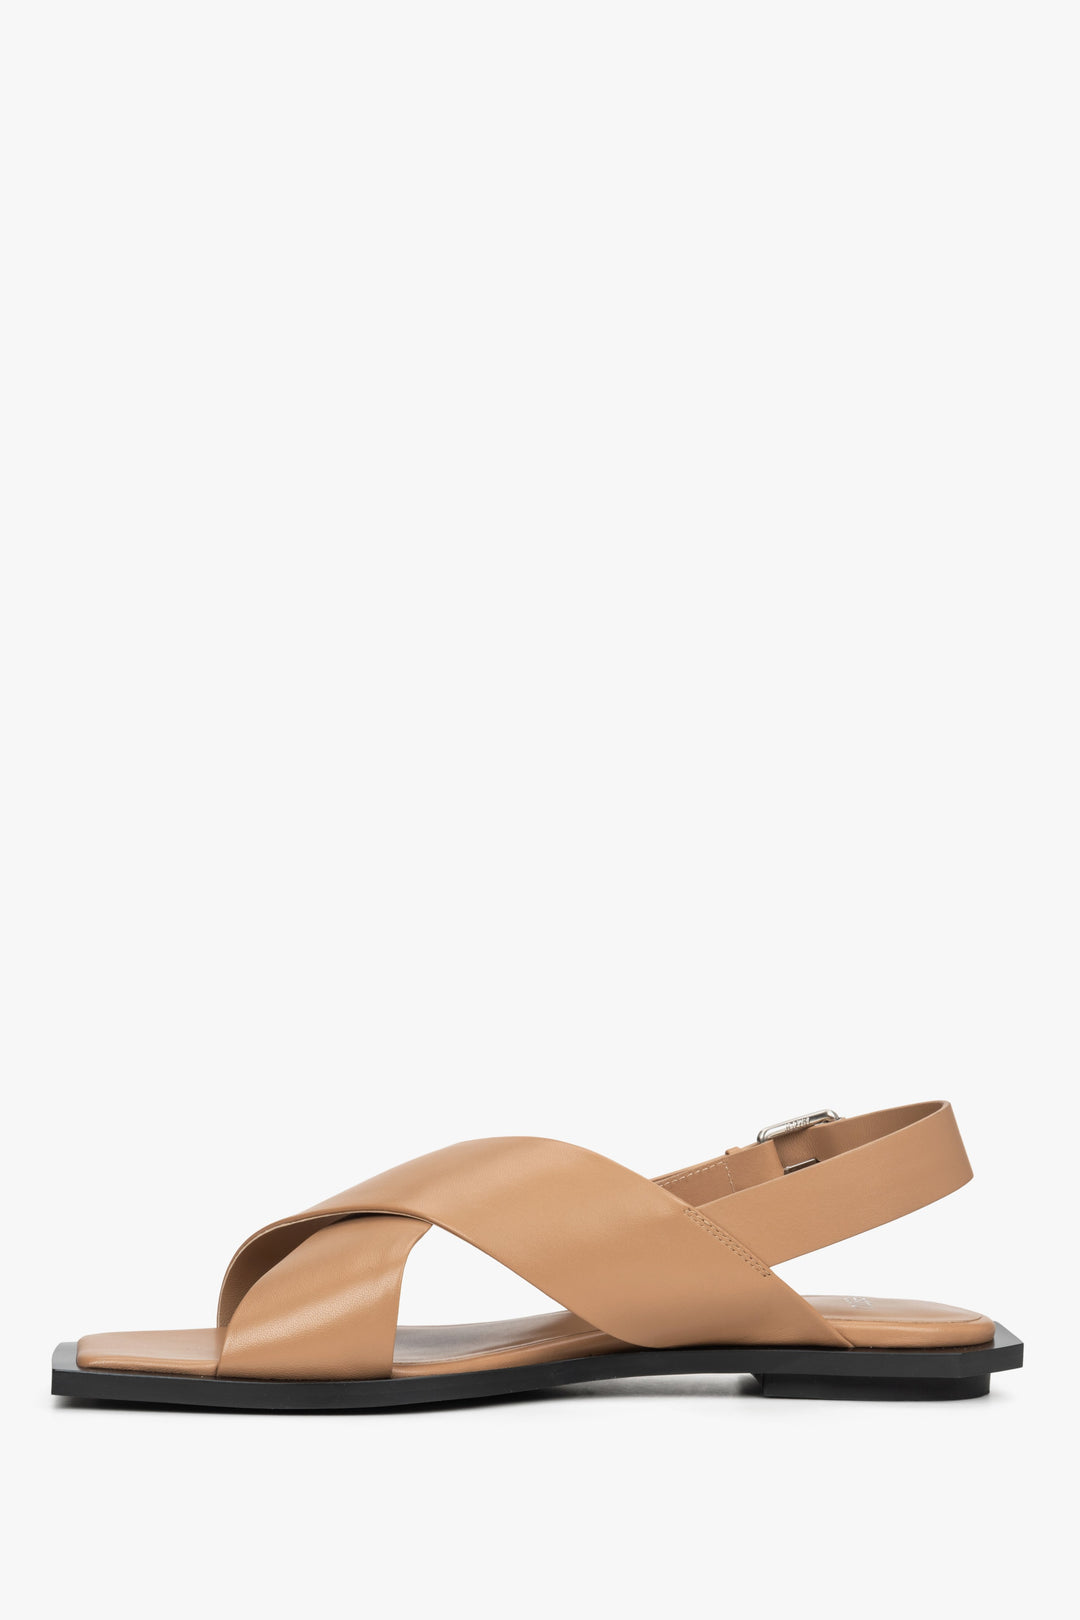 Damskie skórzane sandały damskie Estro, kolor brązowy - profil buta.